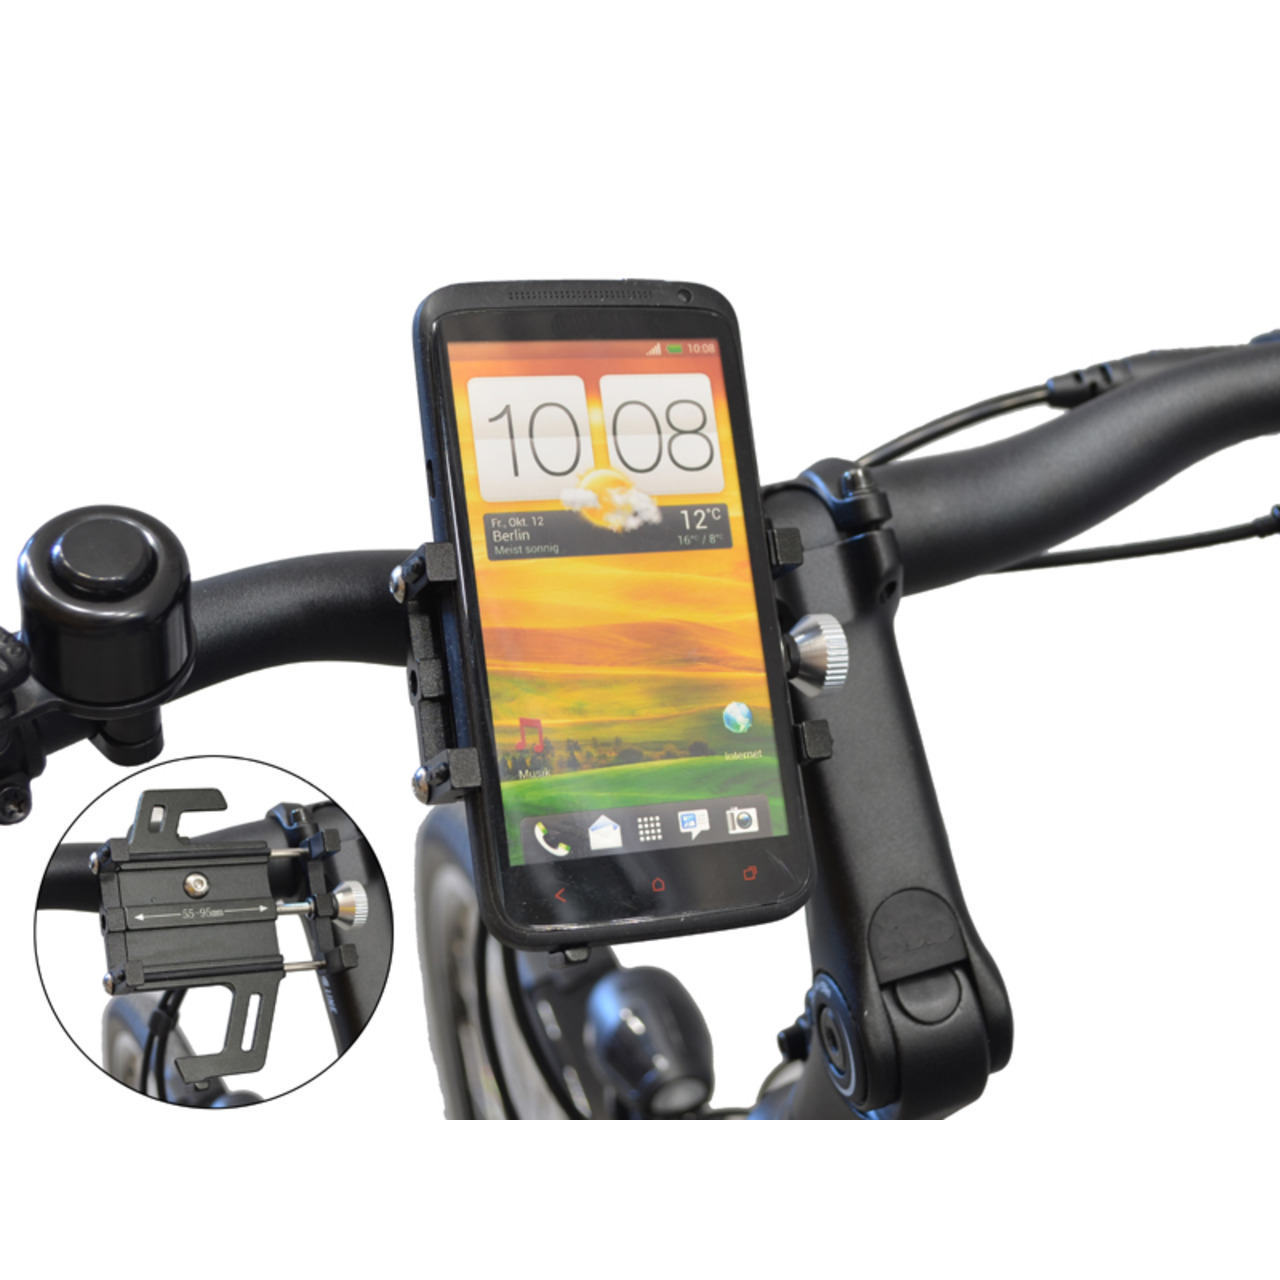 Filmer Fahrrad-Smartphonehalterung 49800- 55 - 95 mm Smartphone-Breite- mit Stossdmpfung- Aluminium